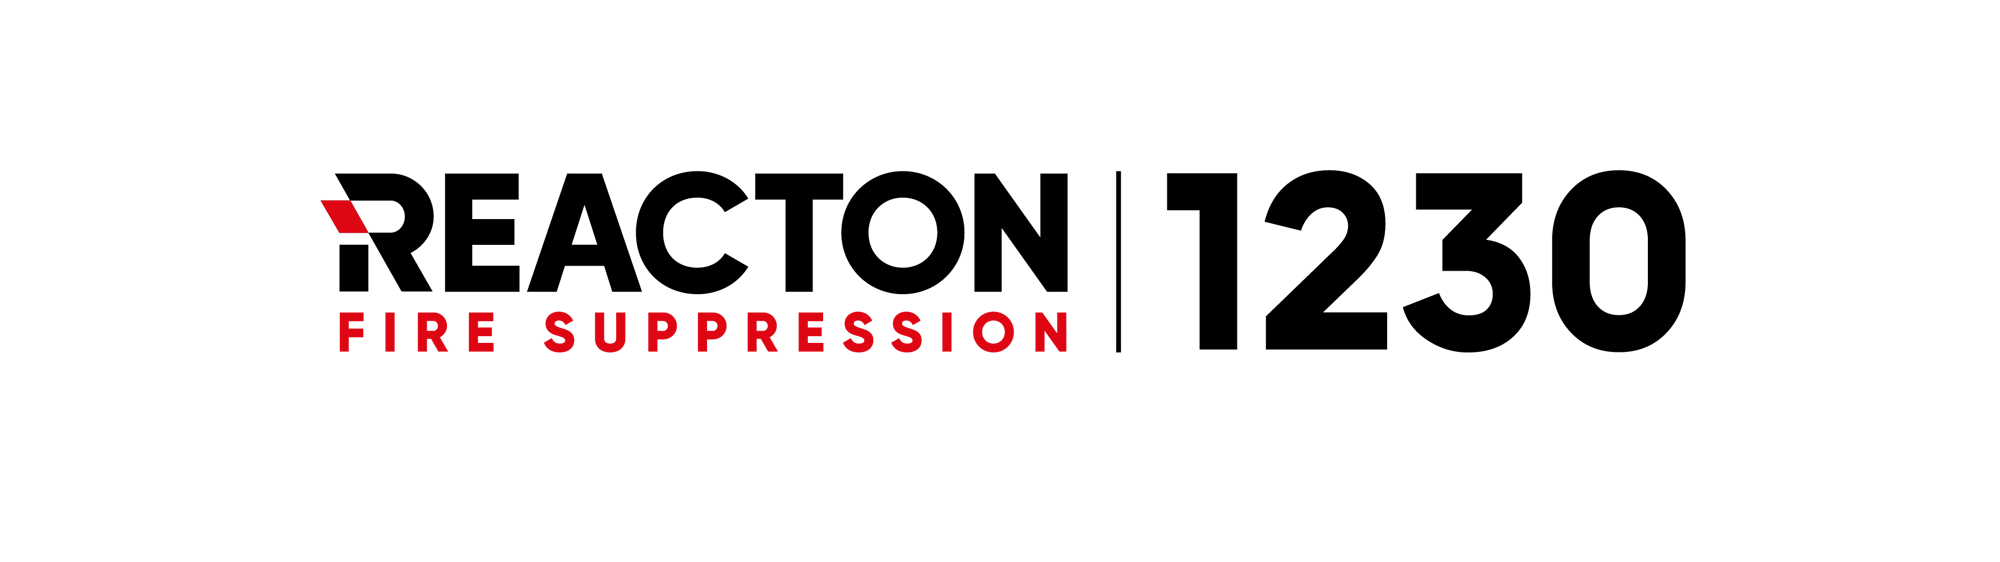 Reacton 1230 logo-01 (1)